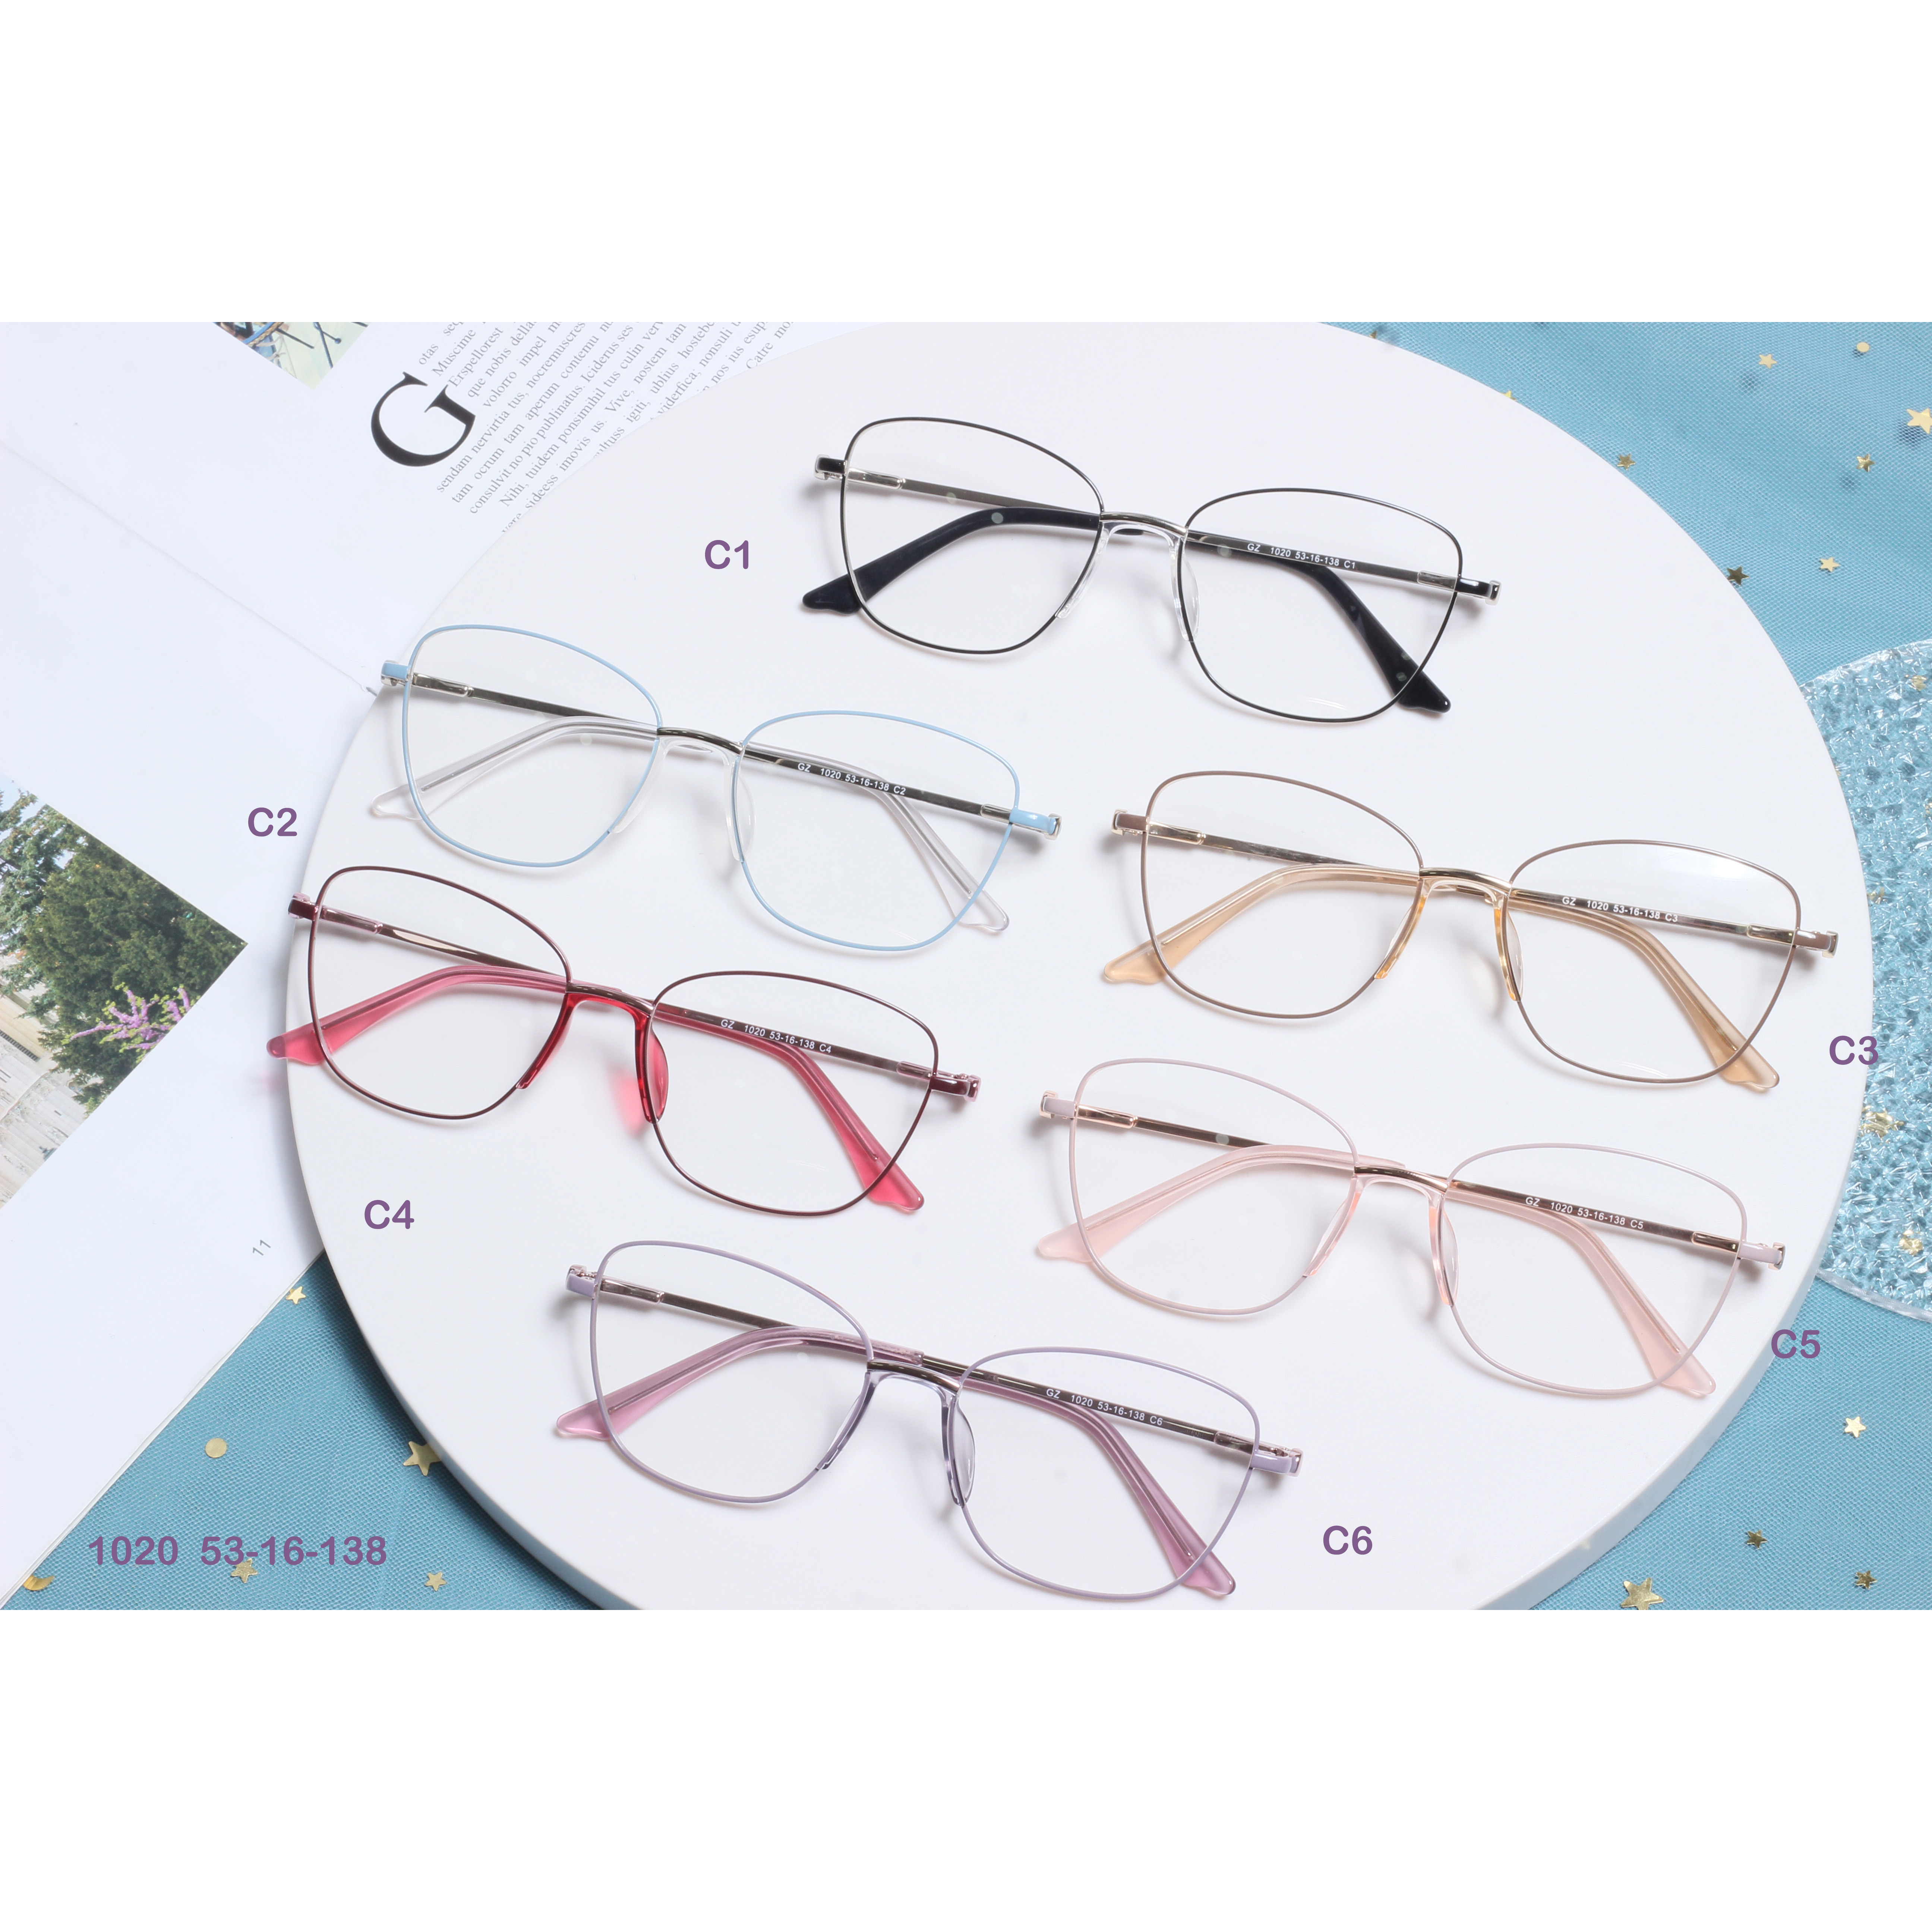 Anti Blue Rays Glasses Spring Leg Eyeglasses Optical Frames (2)